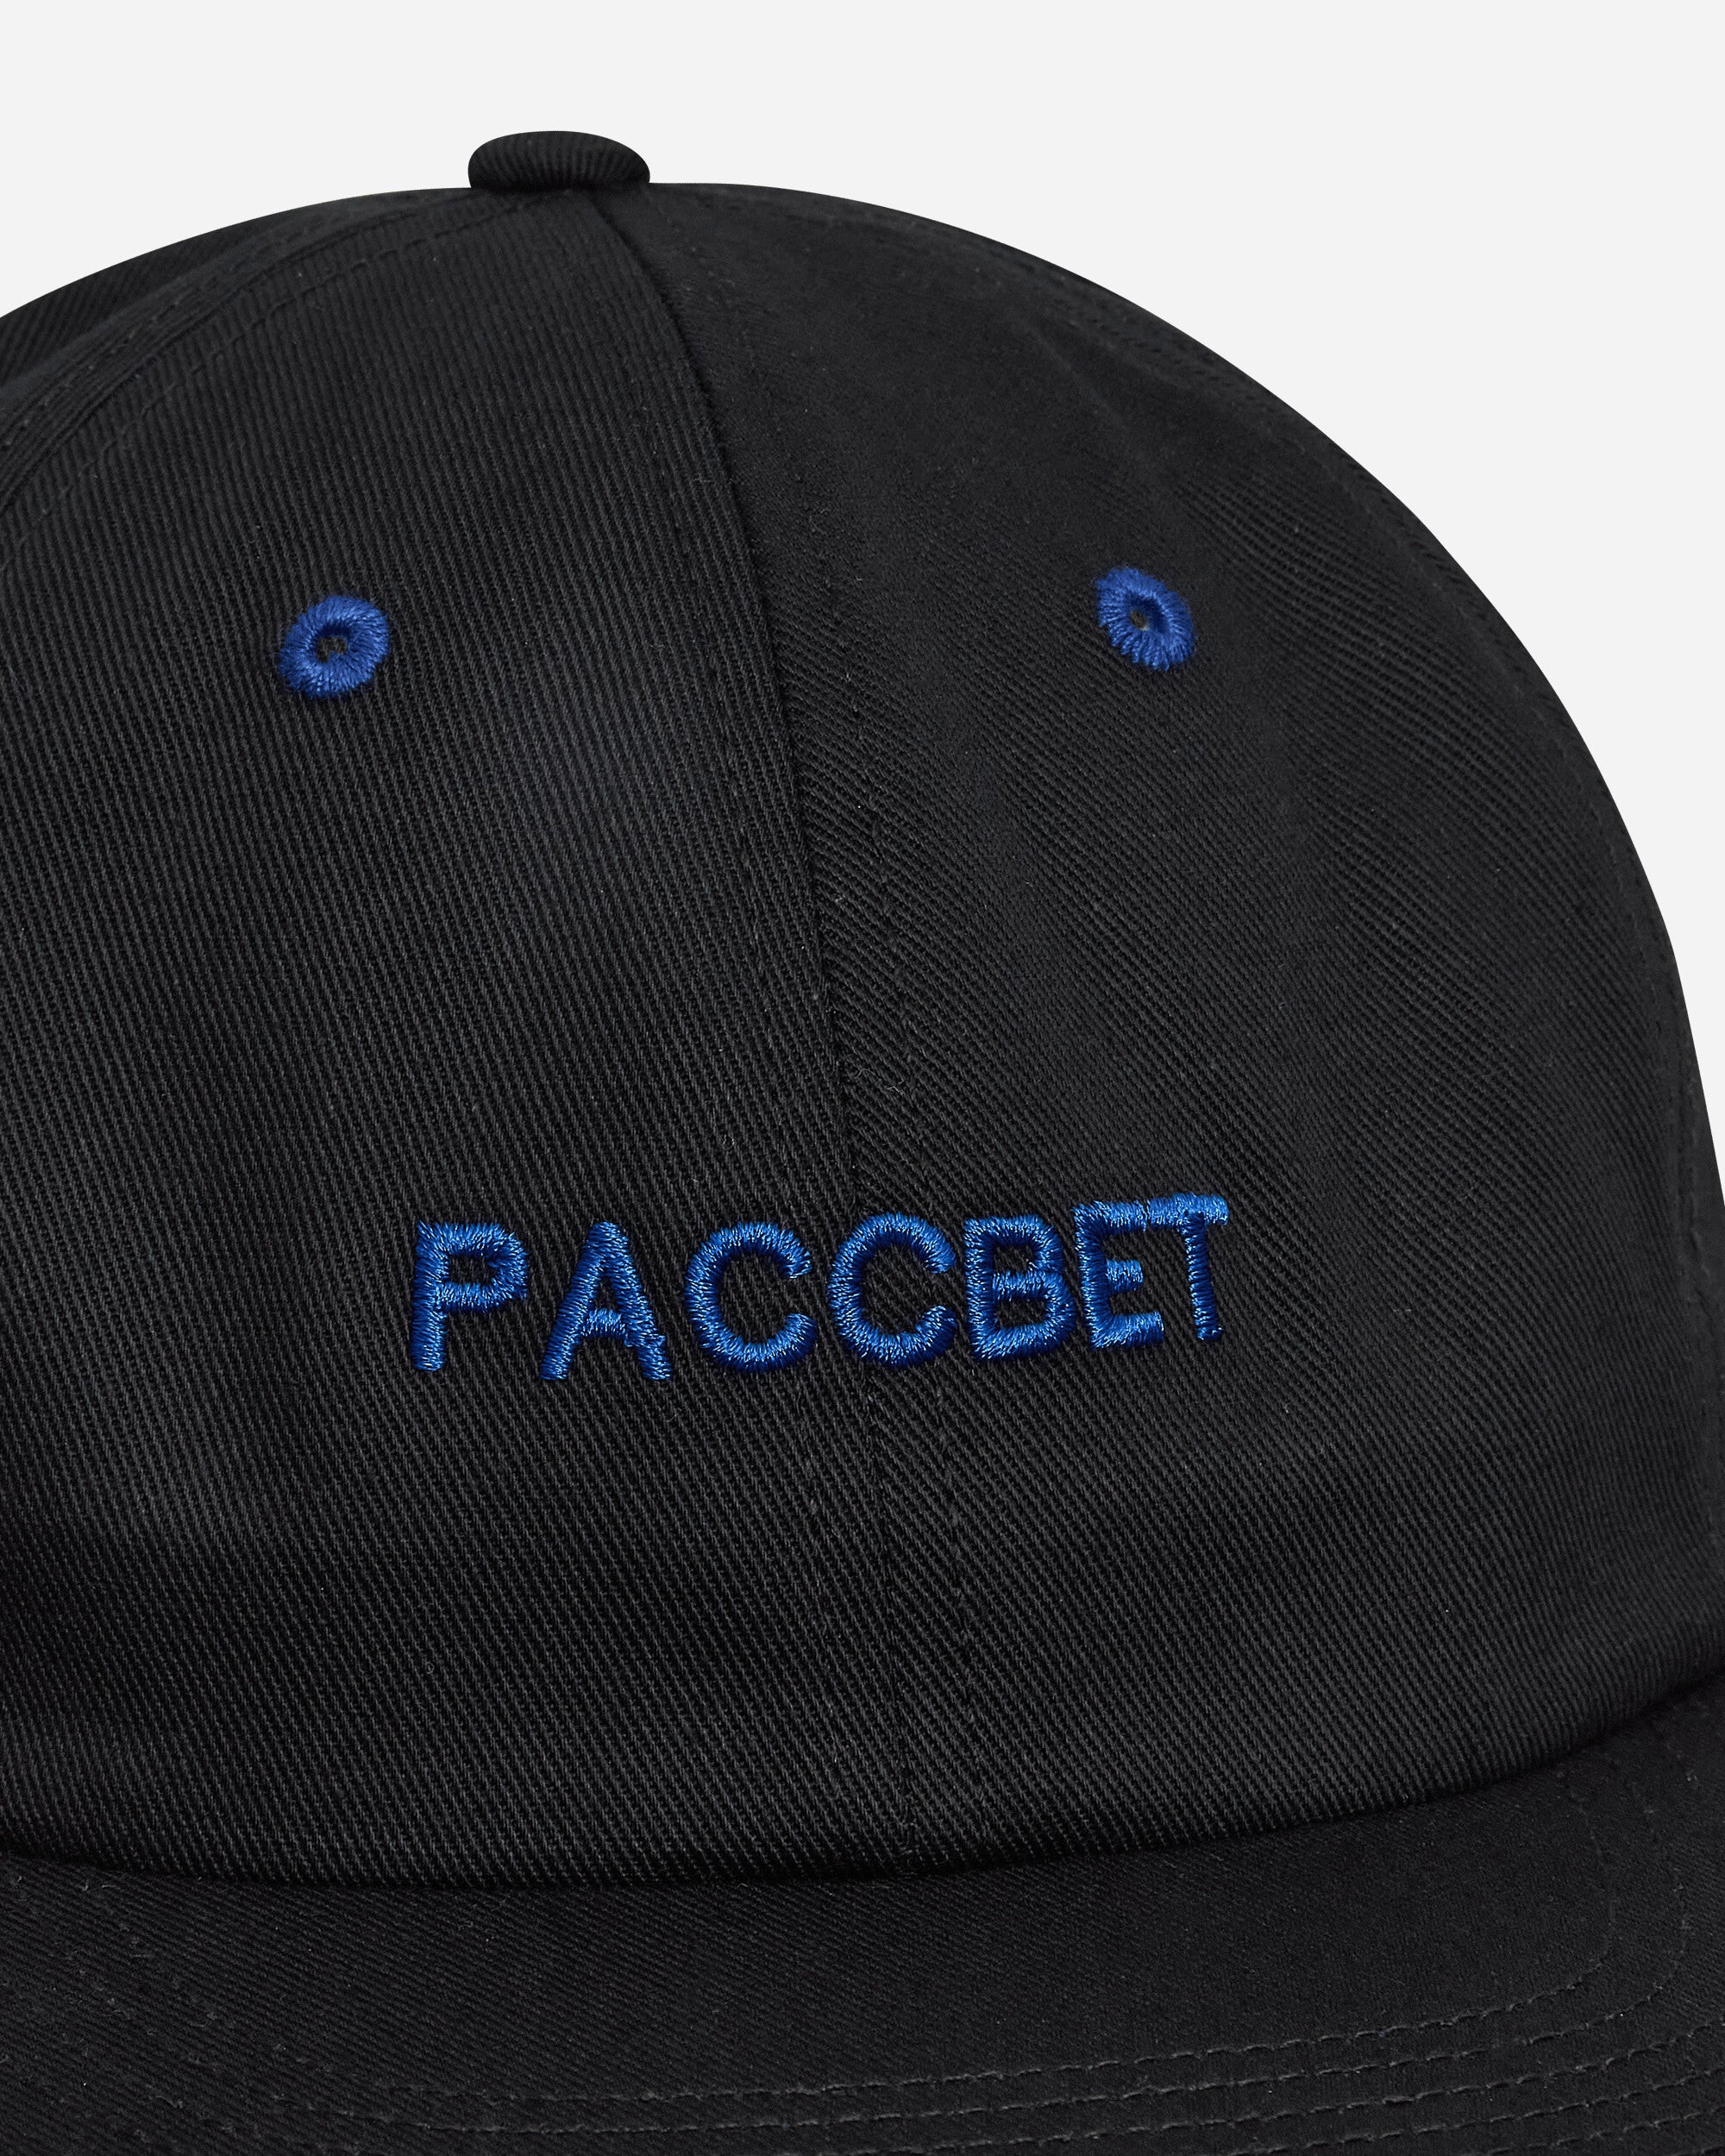 Paccbet Men 6-Panel Paccbet Cap Woven Black Hats Caps PACC12K007 1